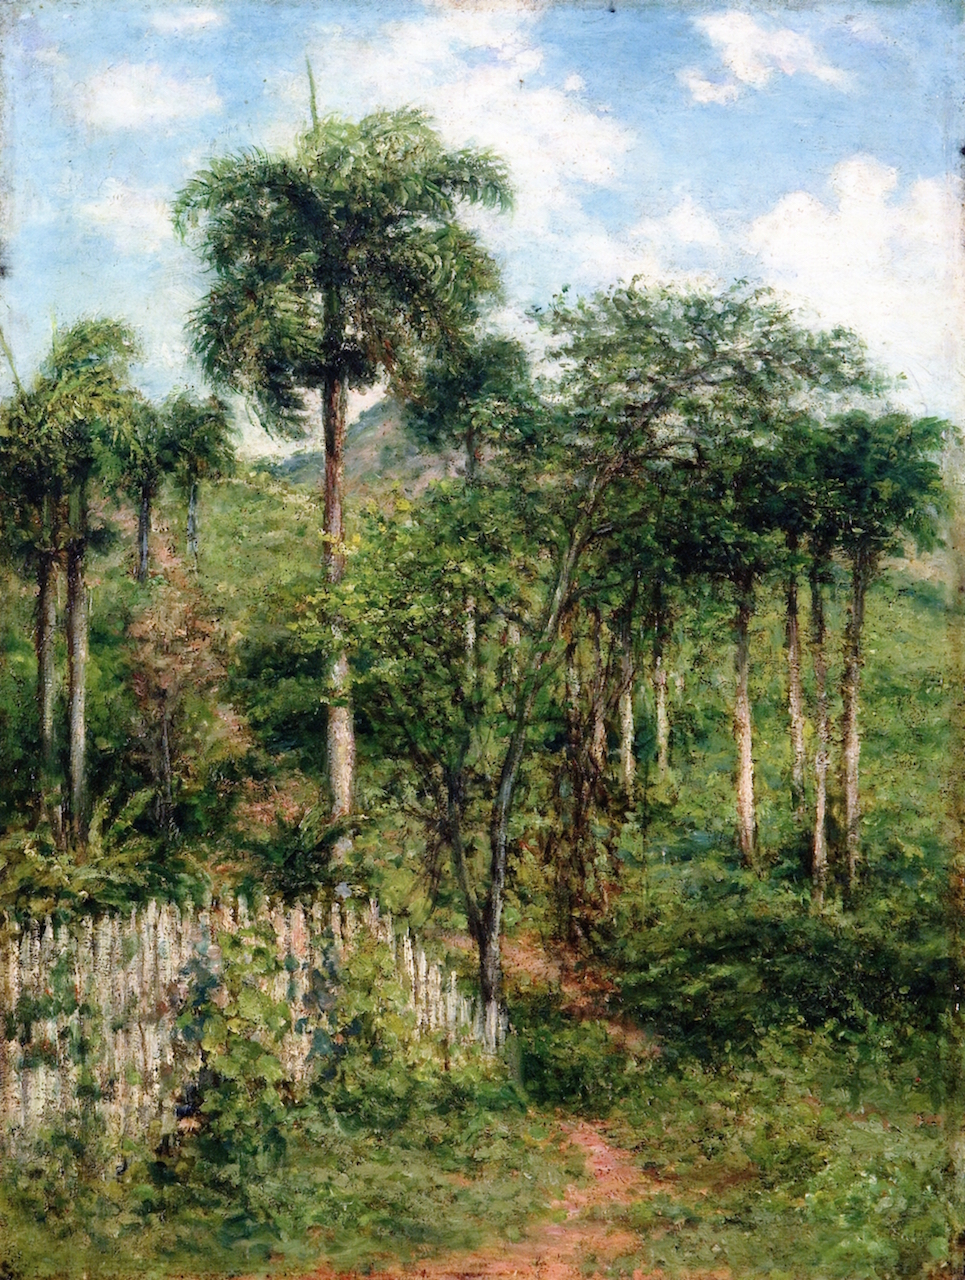 Francisco Oller, Landscape with Royal Palms, c. 1897, oil on canvas, 46.9 x 34.9 cm (Ateneo Puertorriqueño)